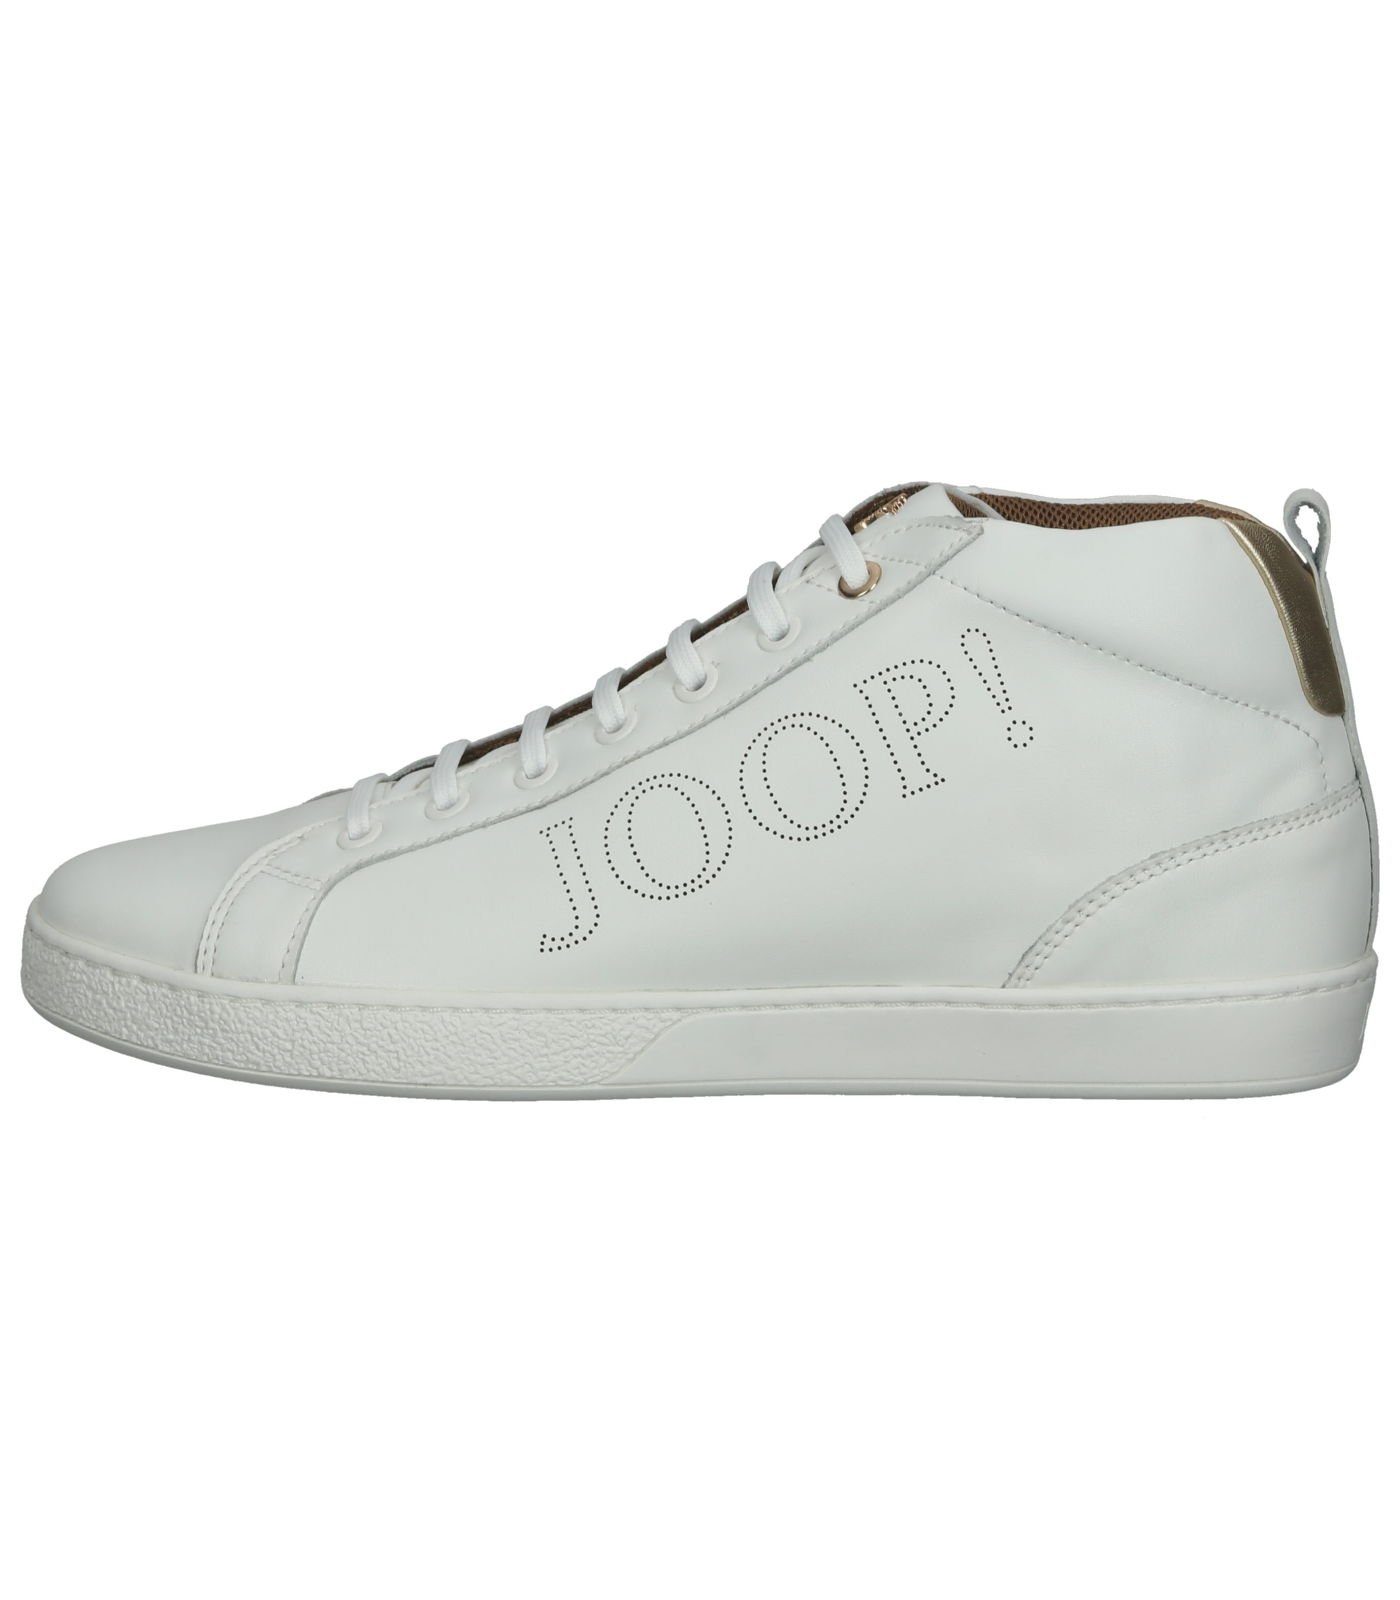 Sneaker Joop! Leder Sneaker